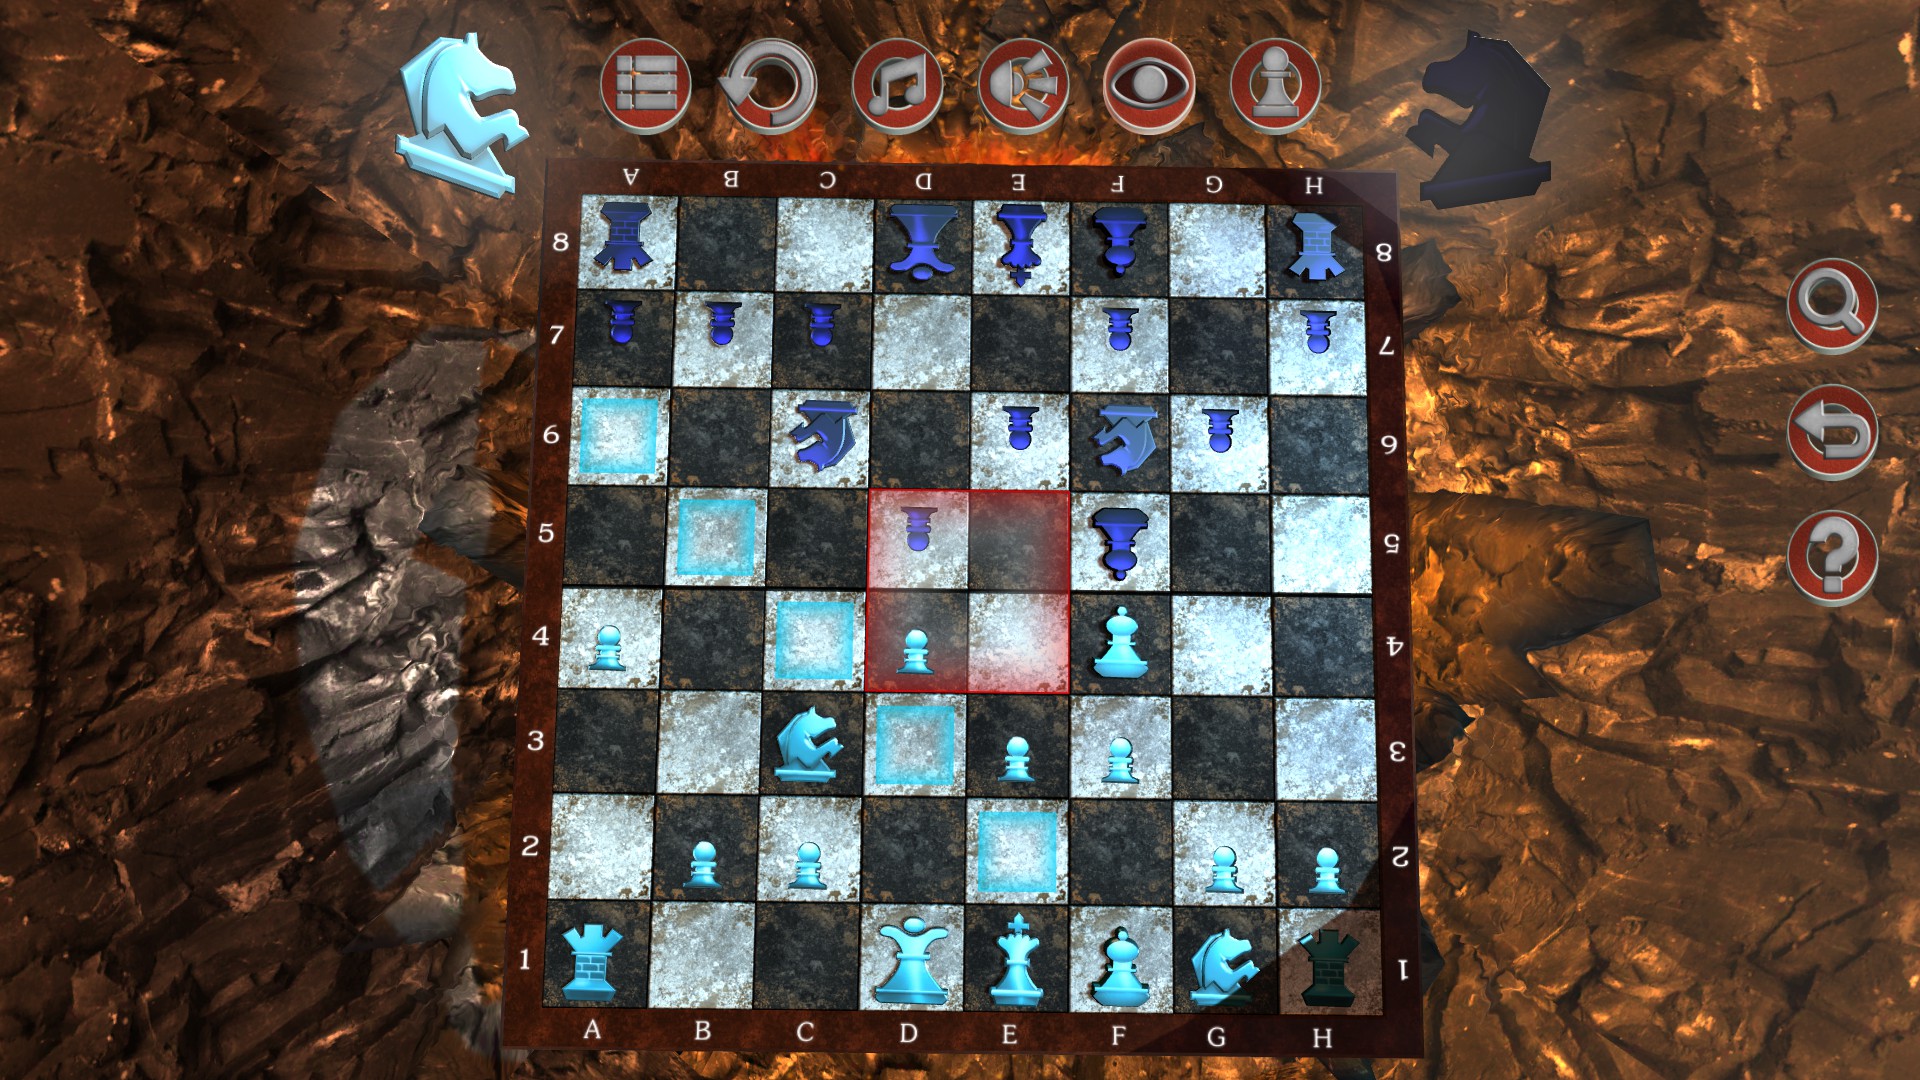 Chess Knight 2 screenshot